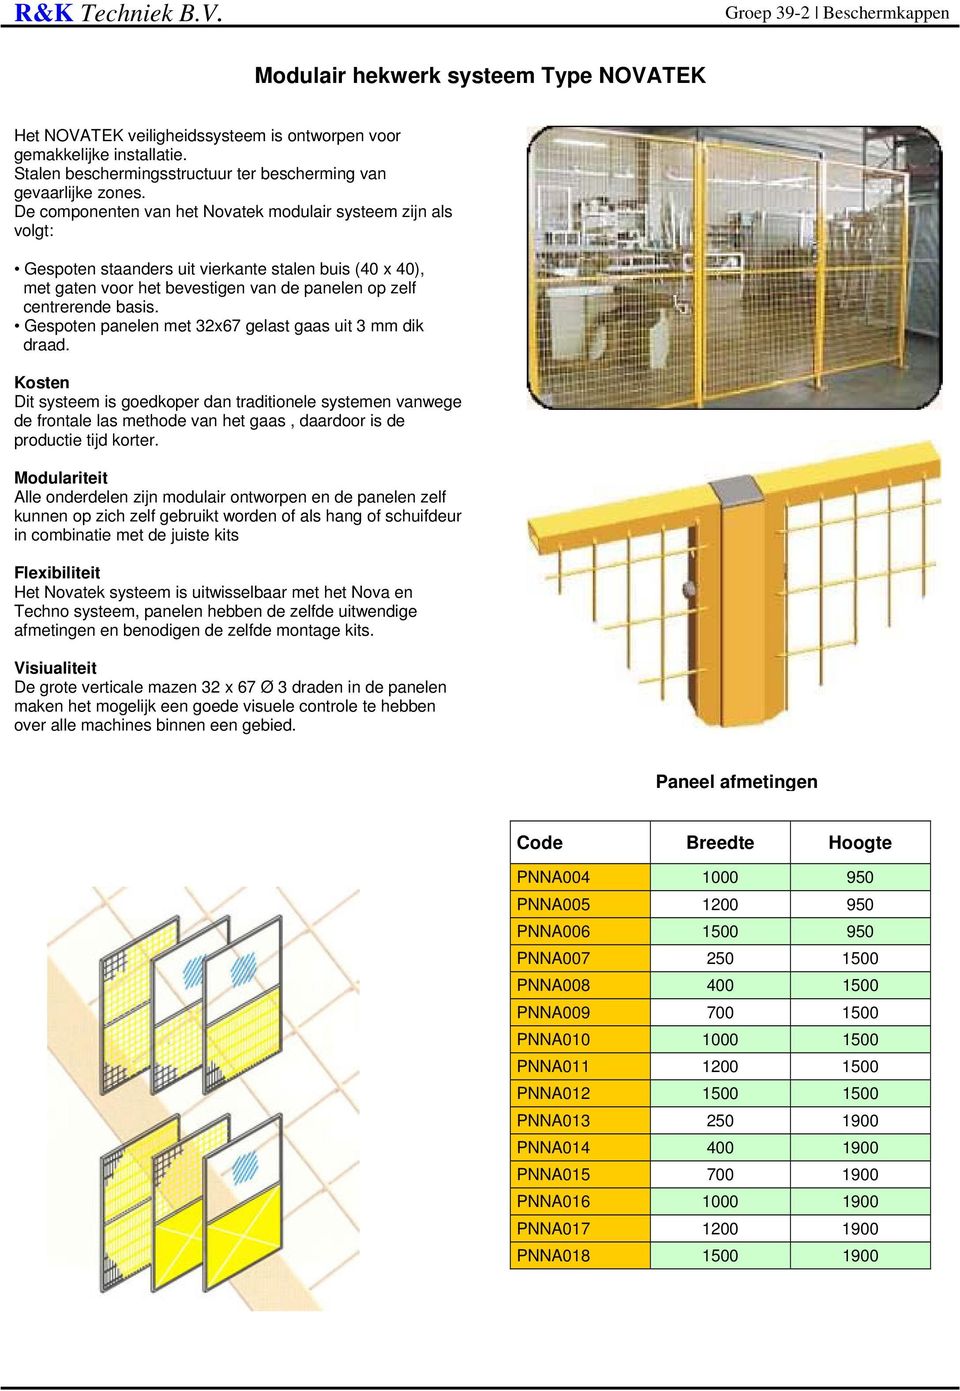 De componenten van het Novatek modulair systeem zijn als volgt: Gespoten staanders uit vierkante stalen buis (40 x 40), met gaten voor het bevestigen van de panelen op zelf centrerende basis.